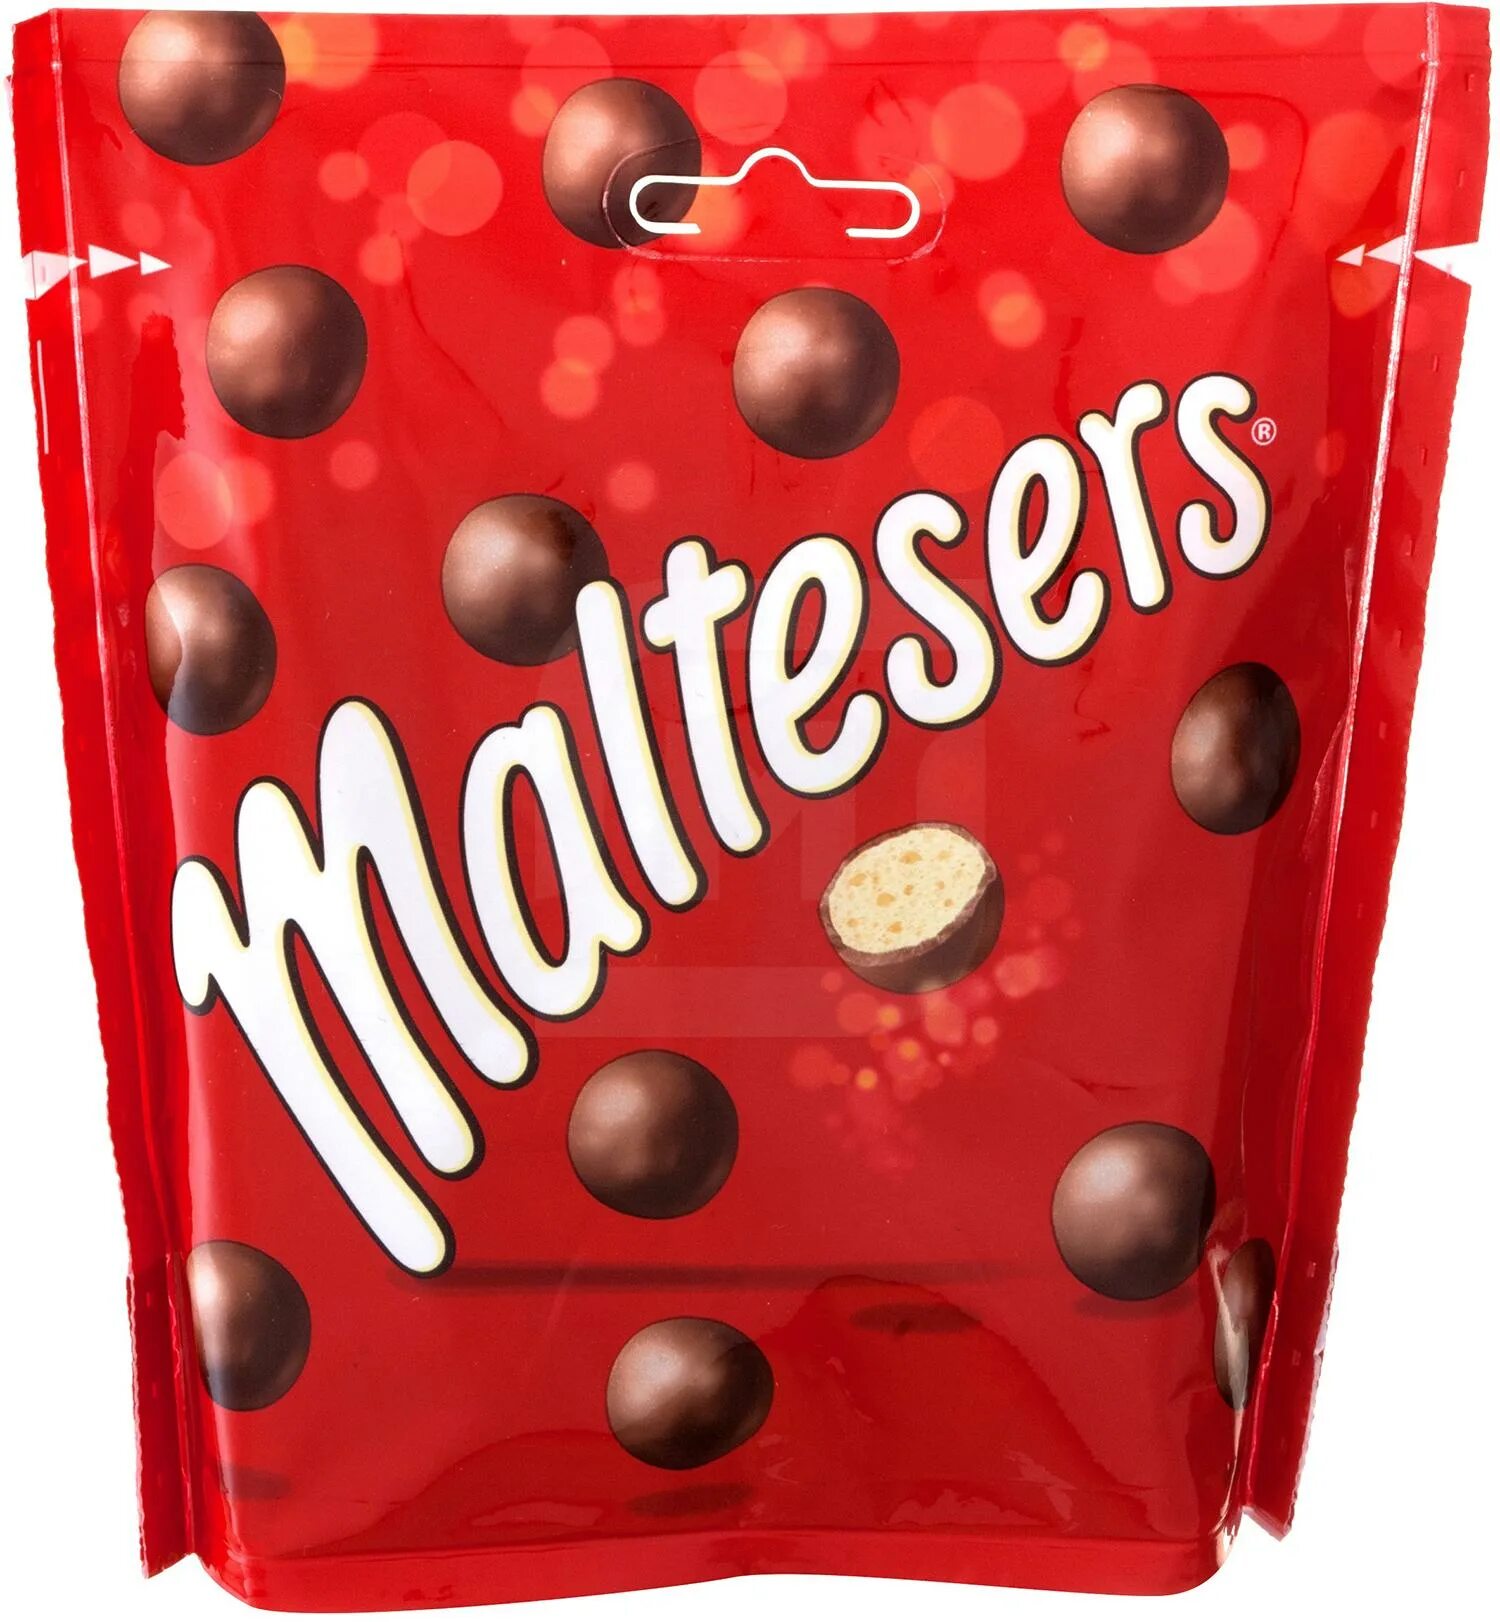 Драже Maltesers. Шоколадное драже Maltesers. Мальтизерс шоколадные шарики. Конфеты Maltesers шоколадные шарики. Конфеты maltesers купить